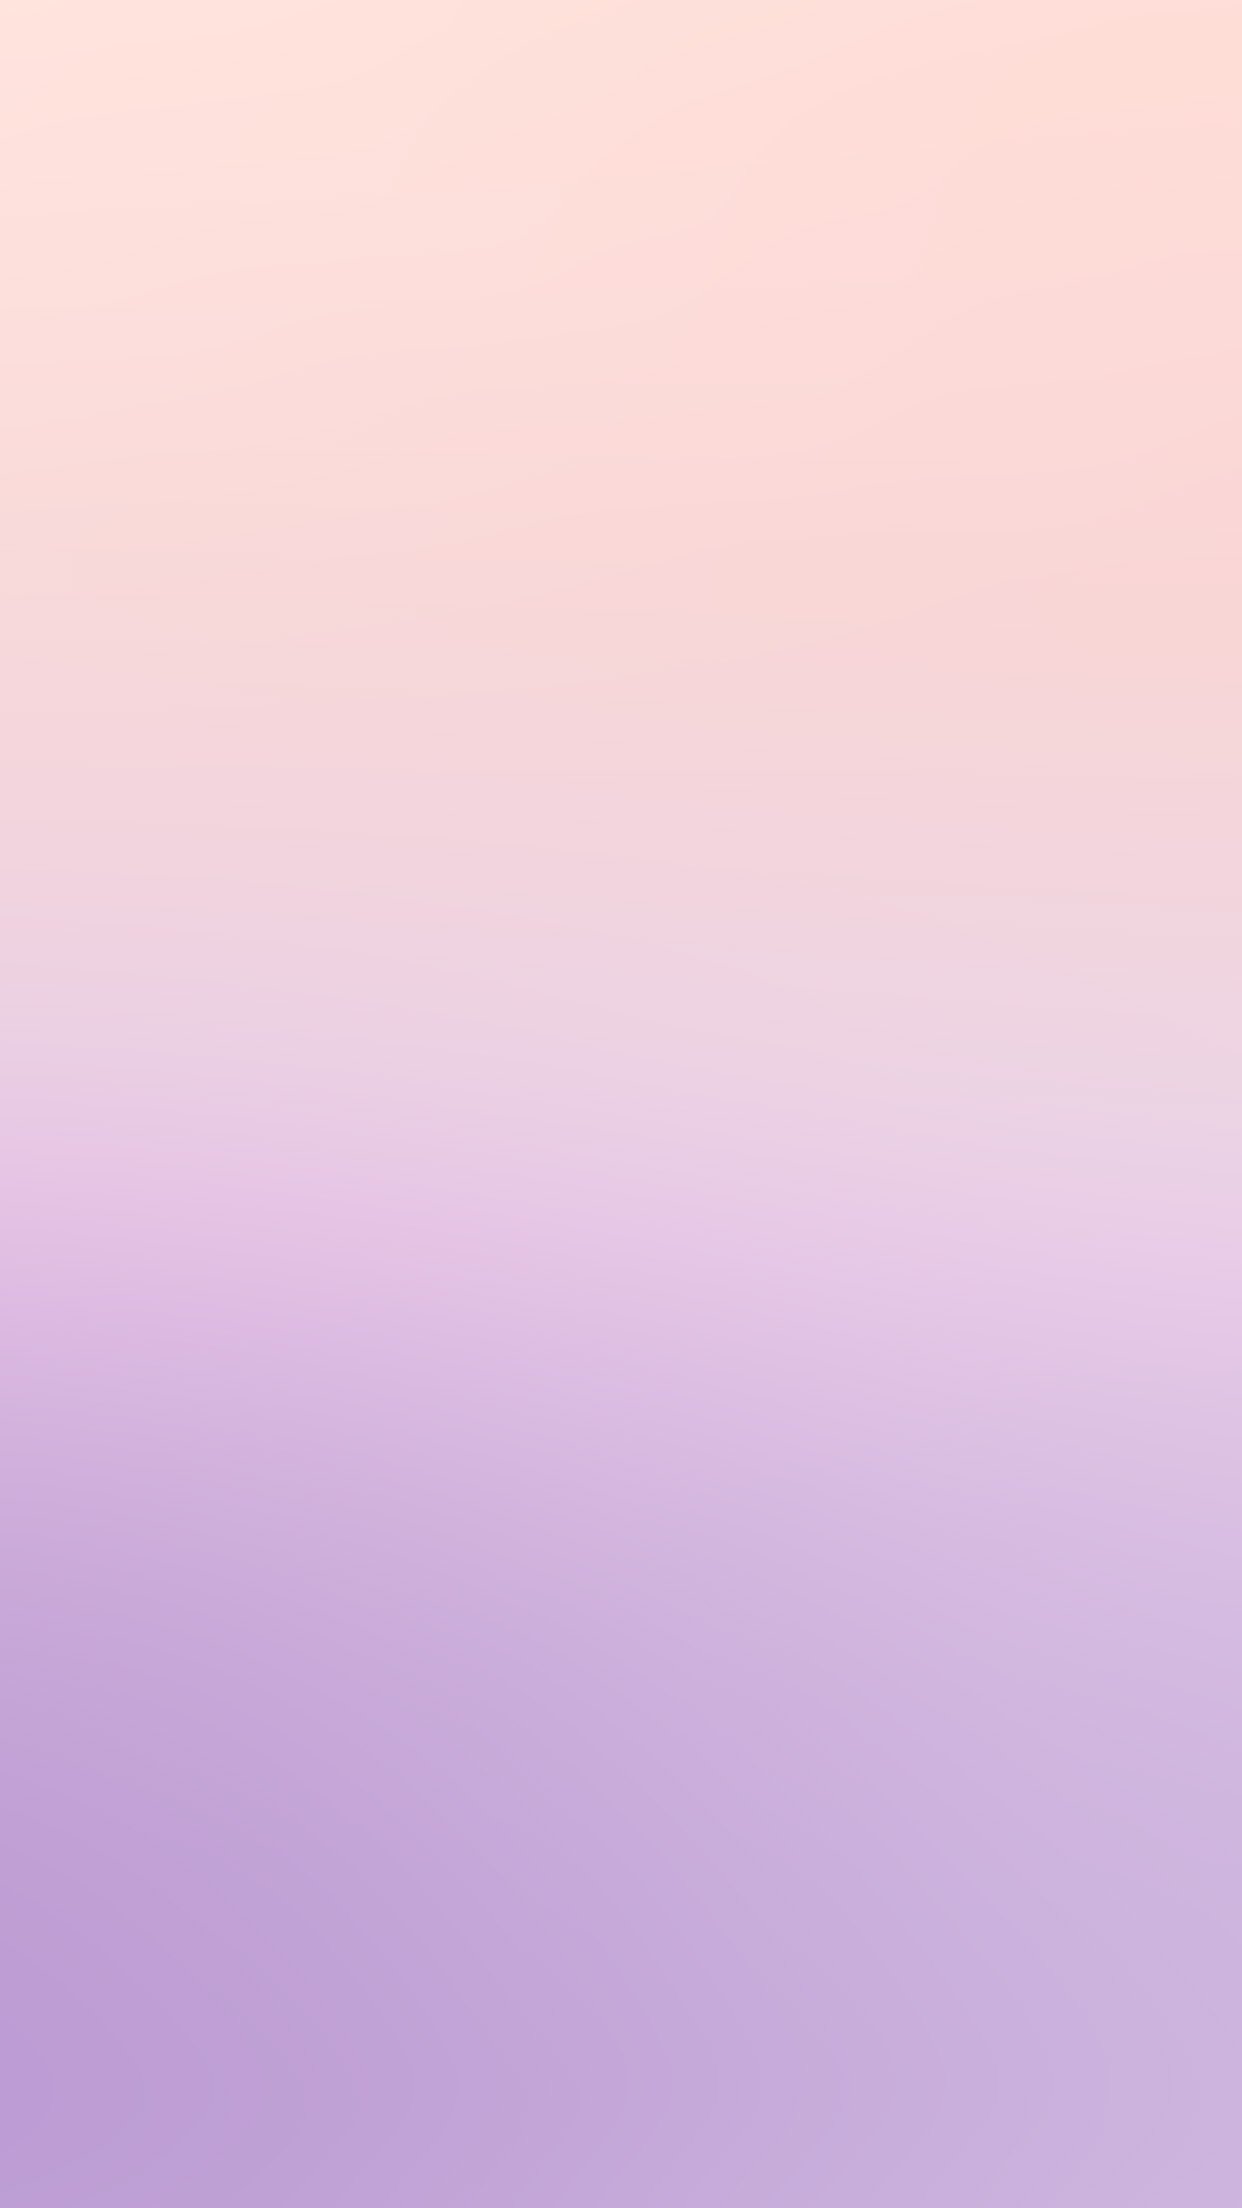 パステルパープル壁紙,ピンク,紫の,バイオレット,ライラック,空